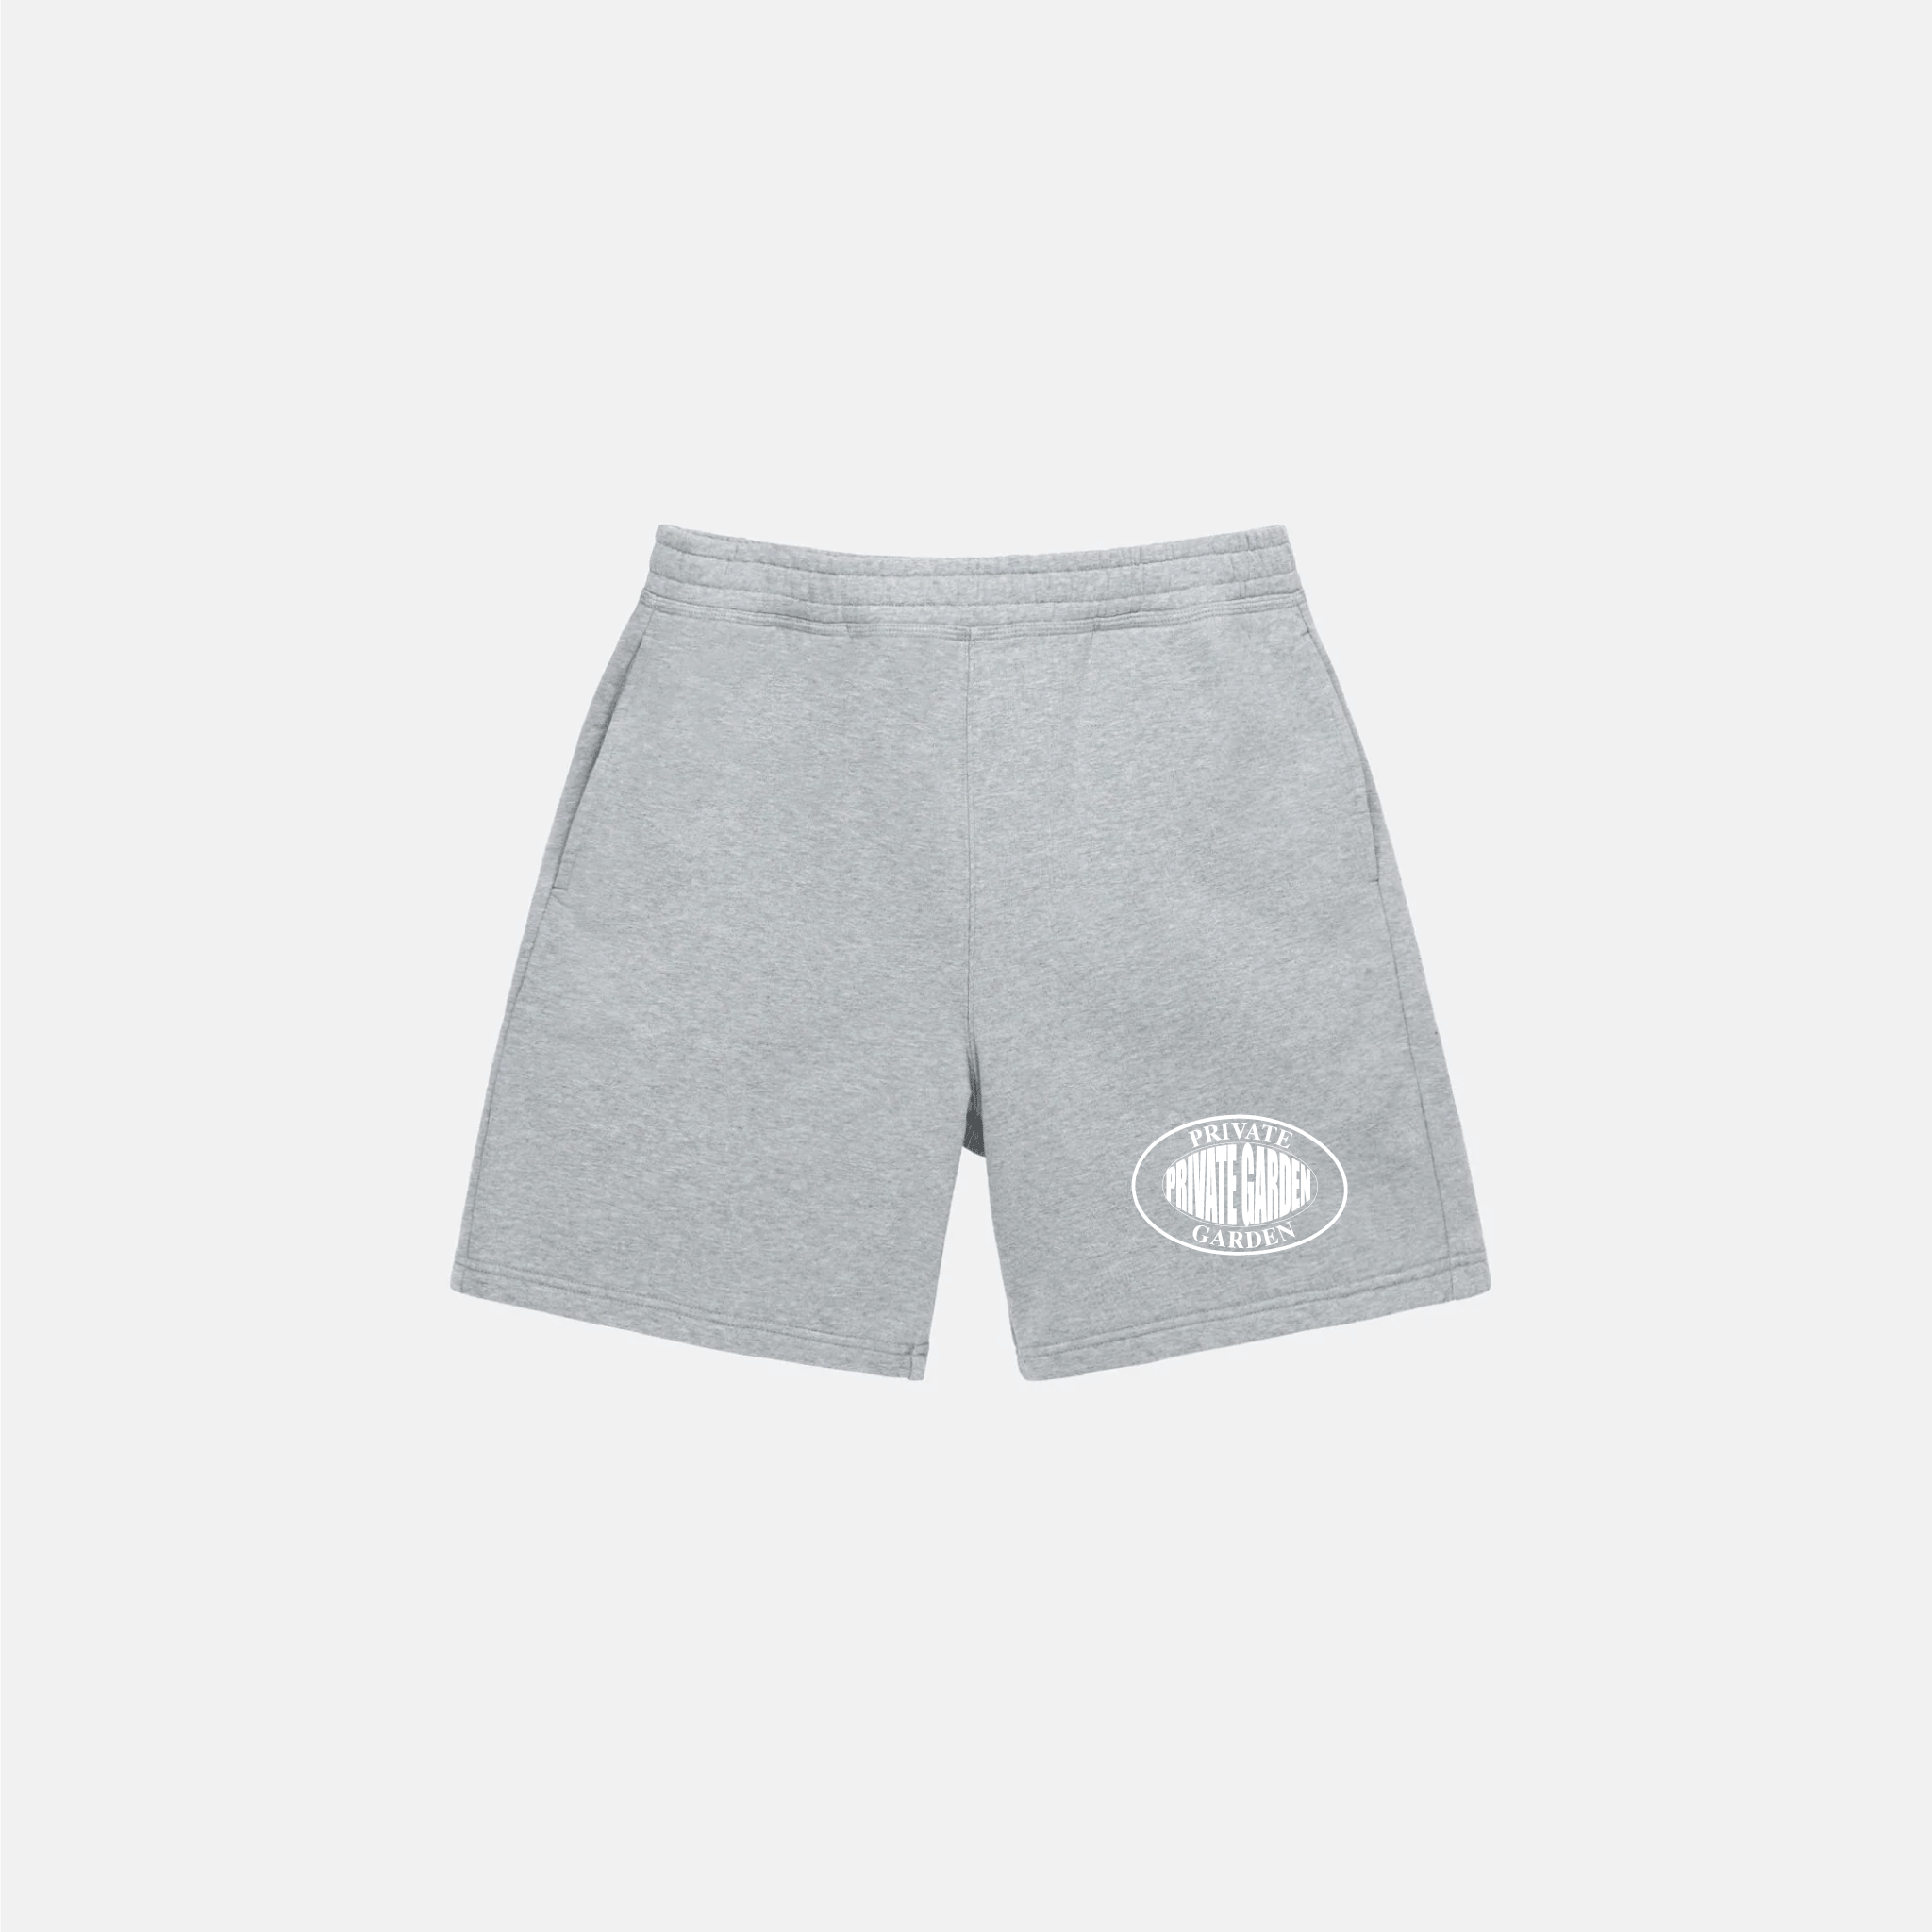 Private Garden Oval Logo Grey Shorts